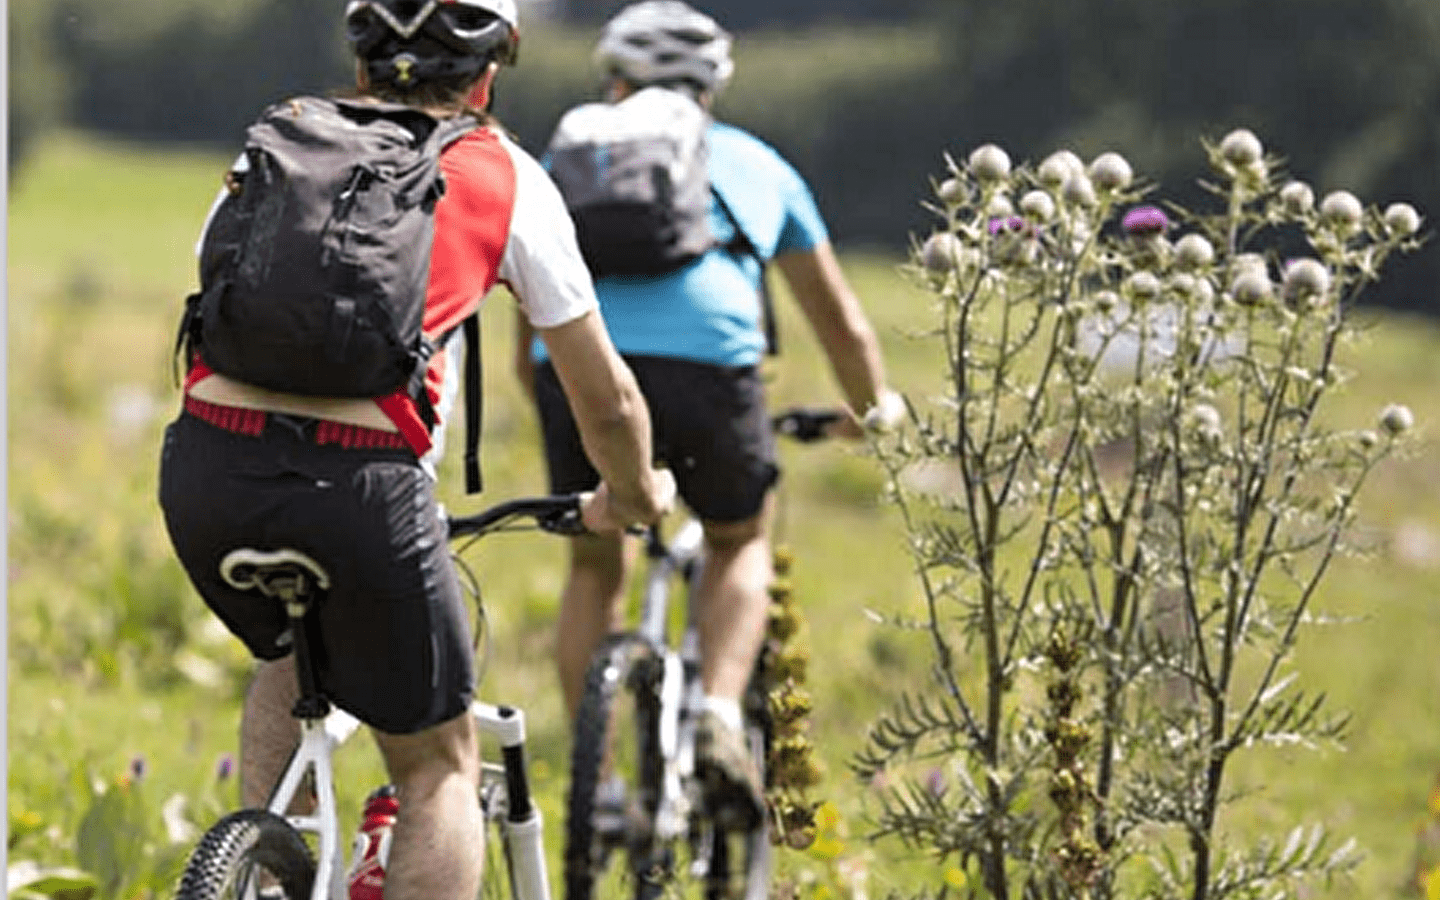 Les Chemins de la Contrebande - Les Gabelous (mountain bike)